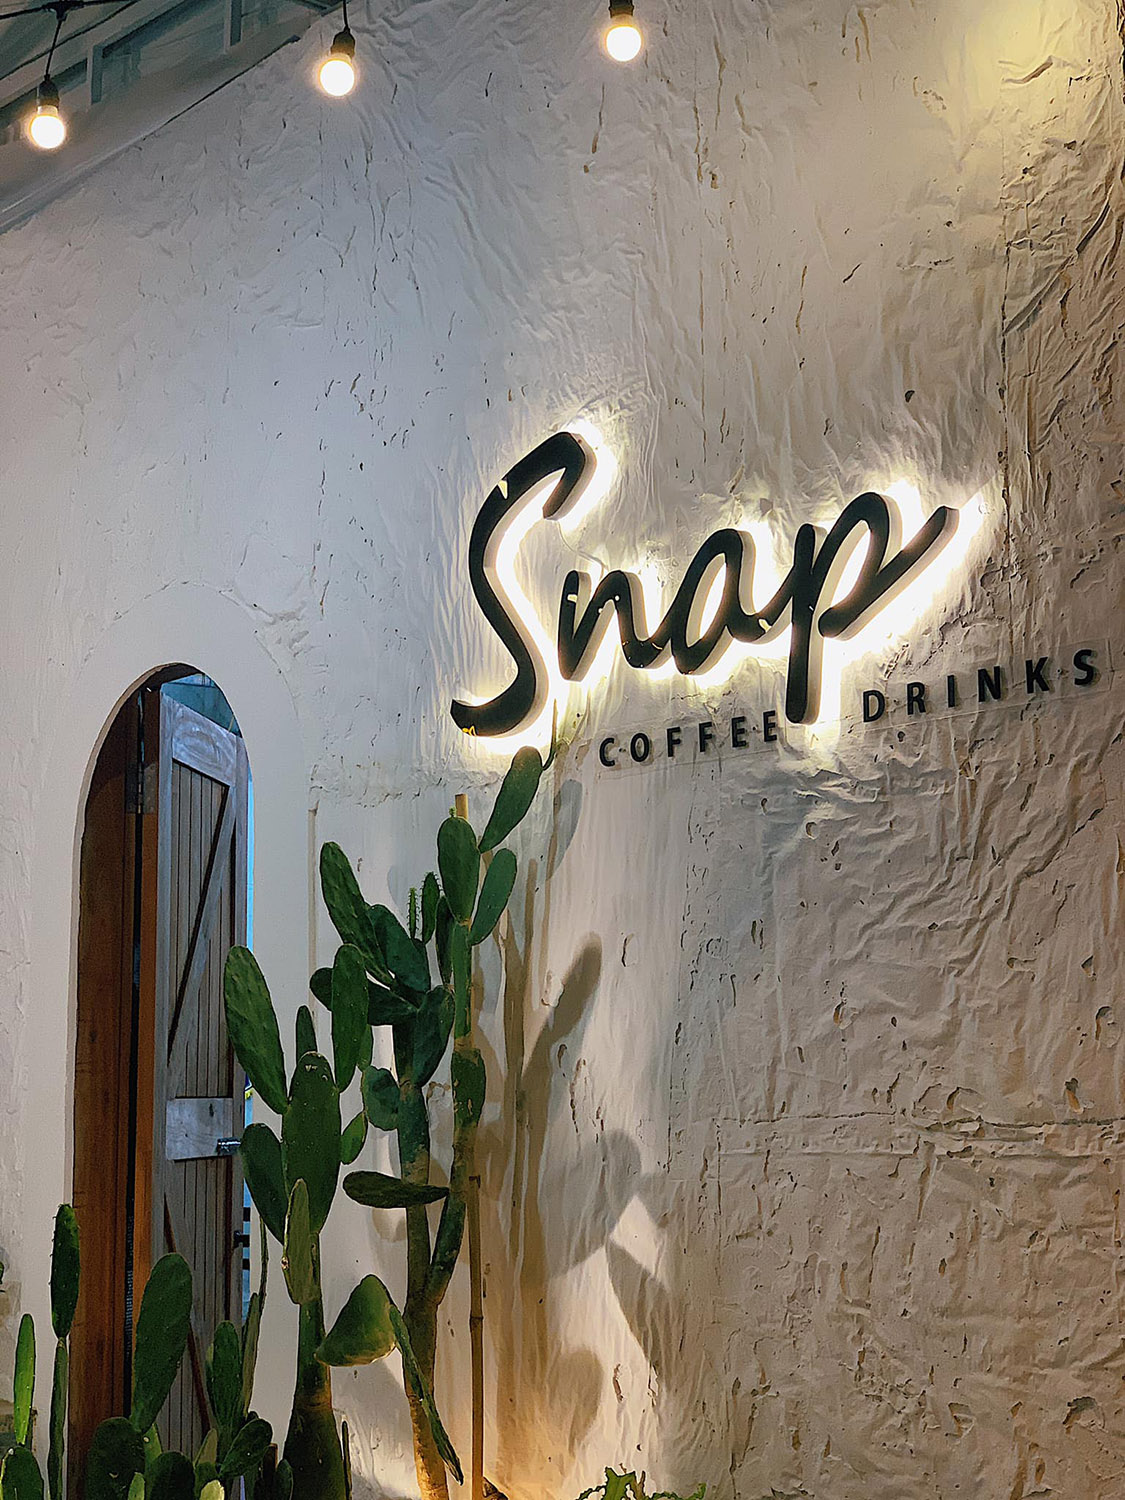 SNAP Coffee Drinks, trải nghiệm không gian đồng quê cực ấn tượng 6